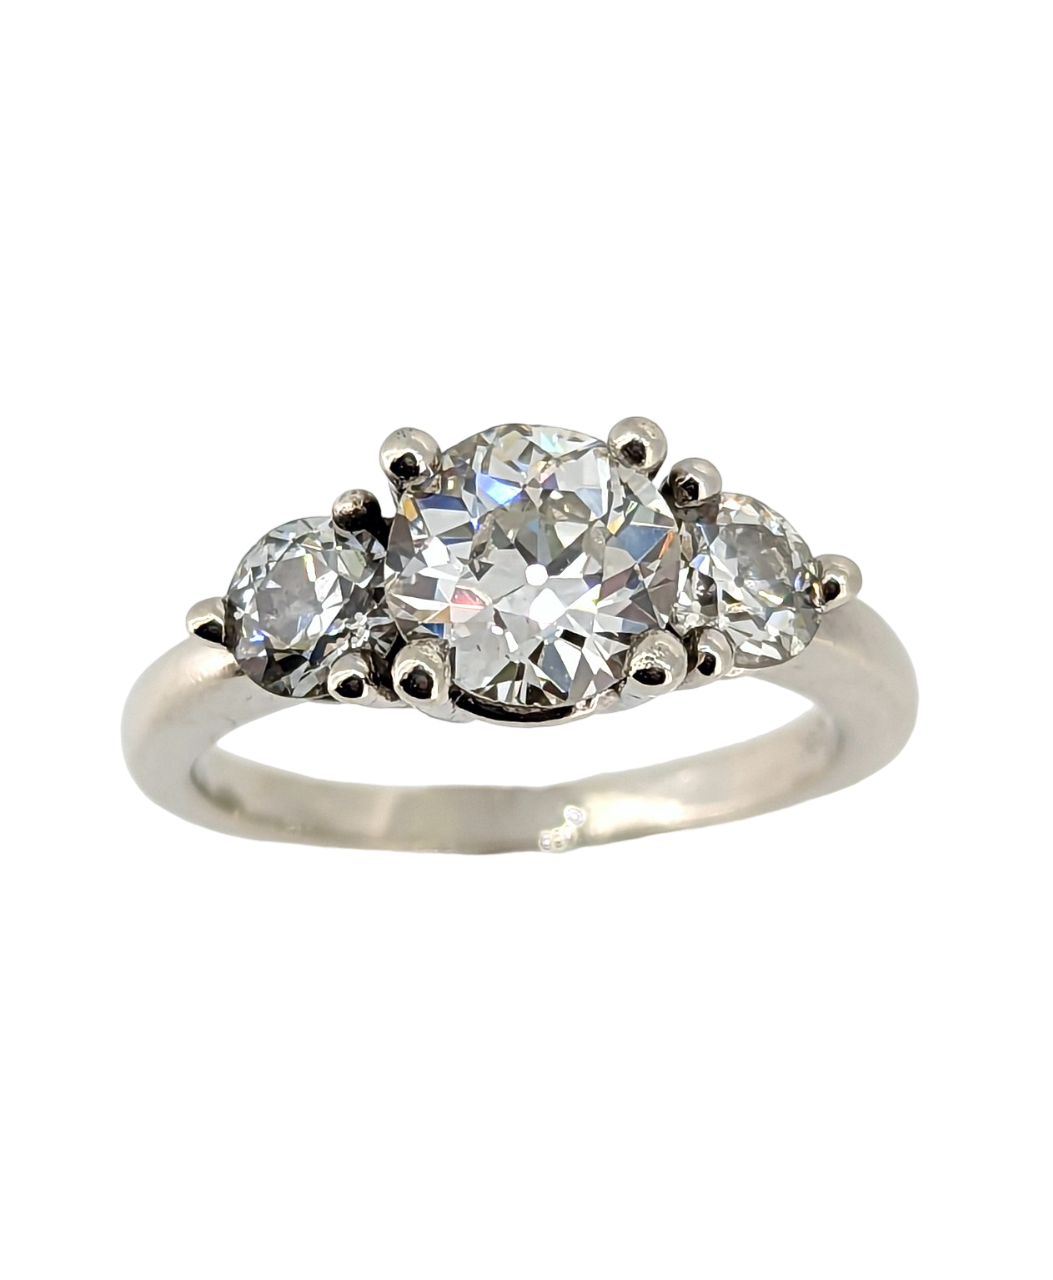 Vintage 1.60 Carat Old European Cut Diamond Engagement Ring 14K White Gold